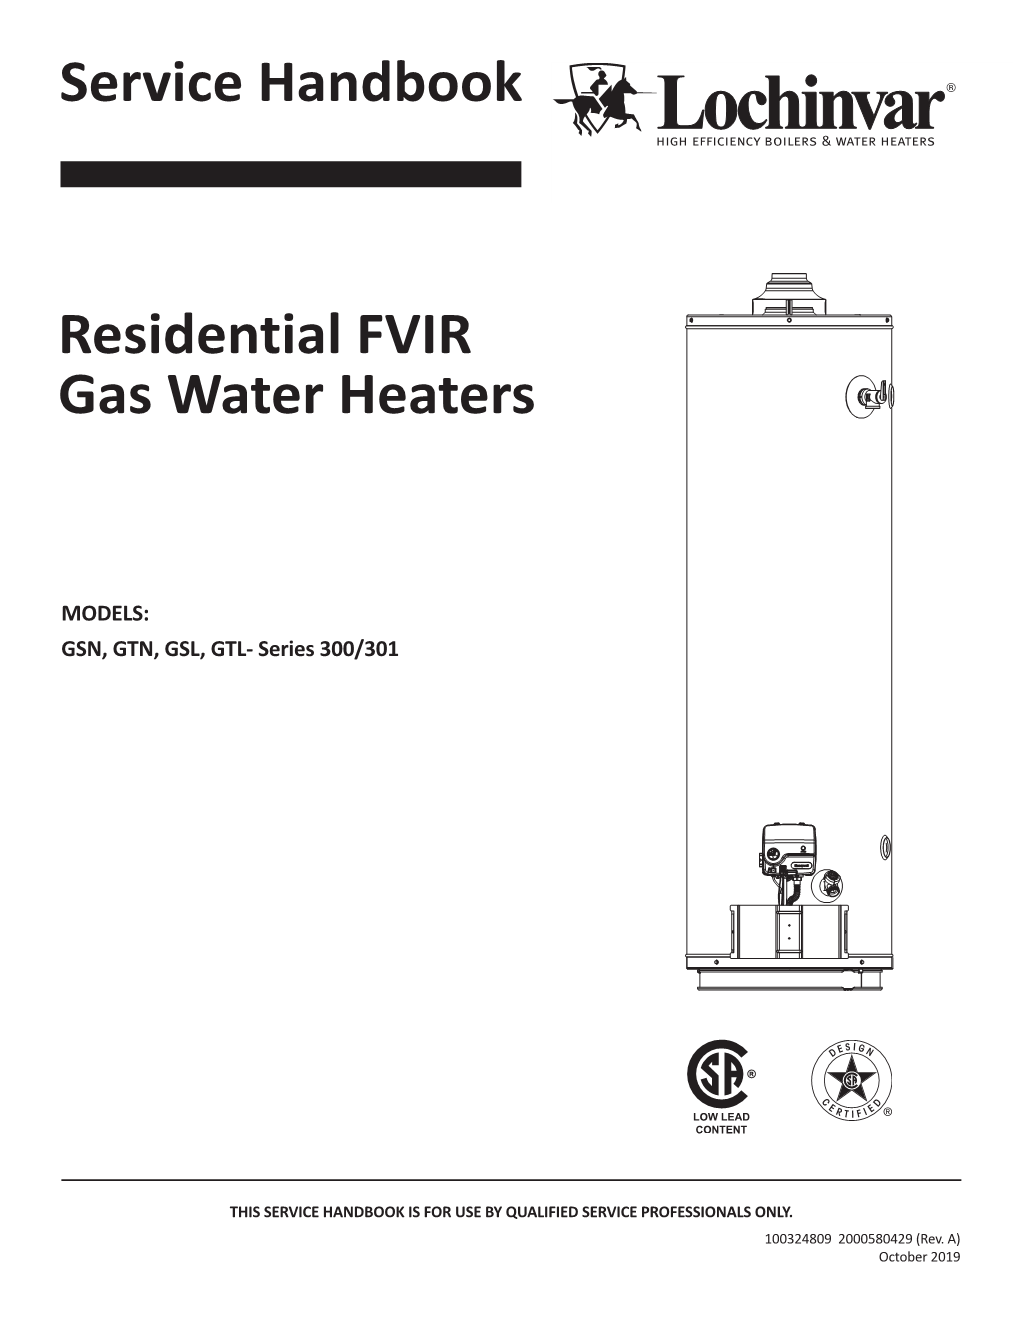 Service Handbook Residential FVIR Gas Water Heaters